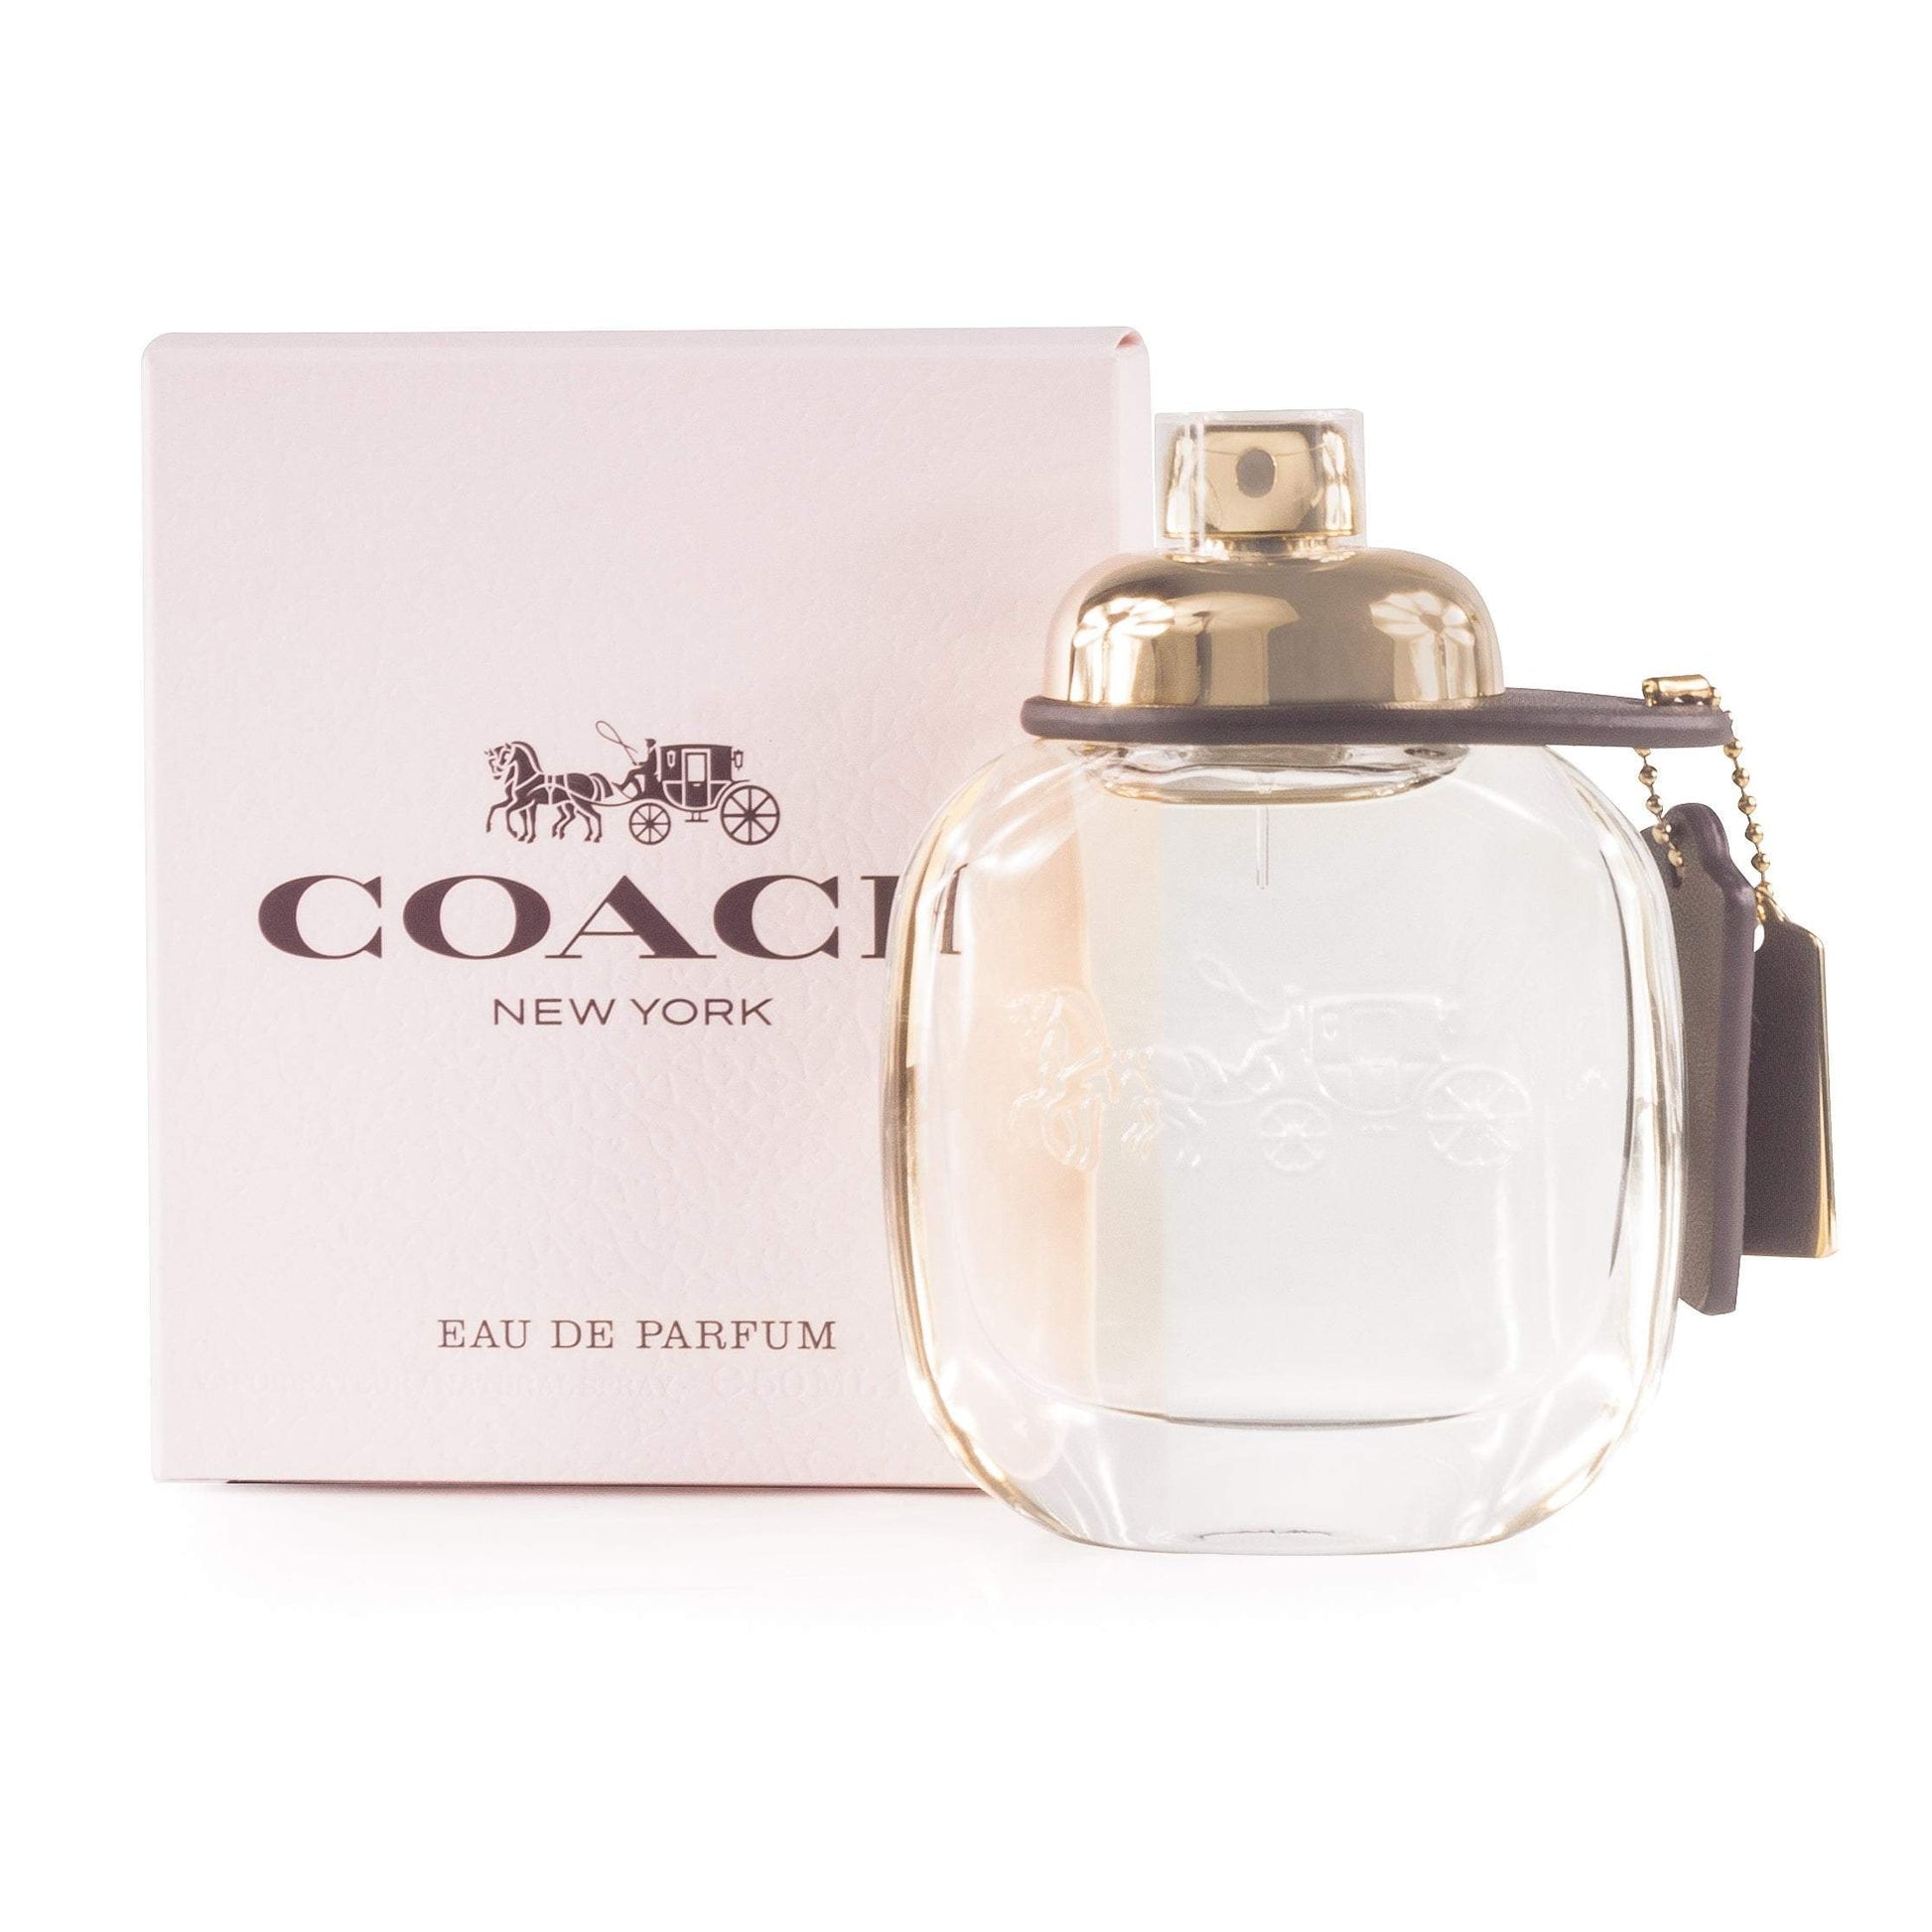 Coach Platinum Eau De Toilette Men's 1.7 Oz Luxury Perfume